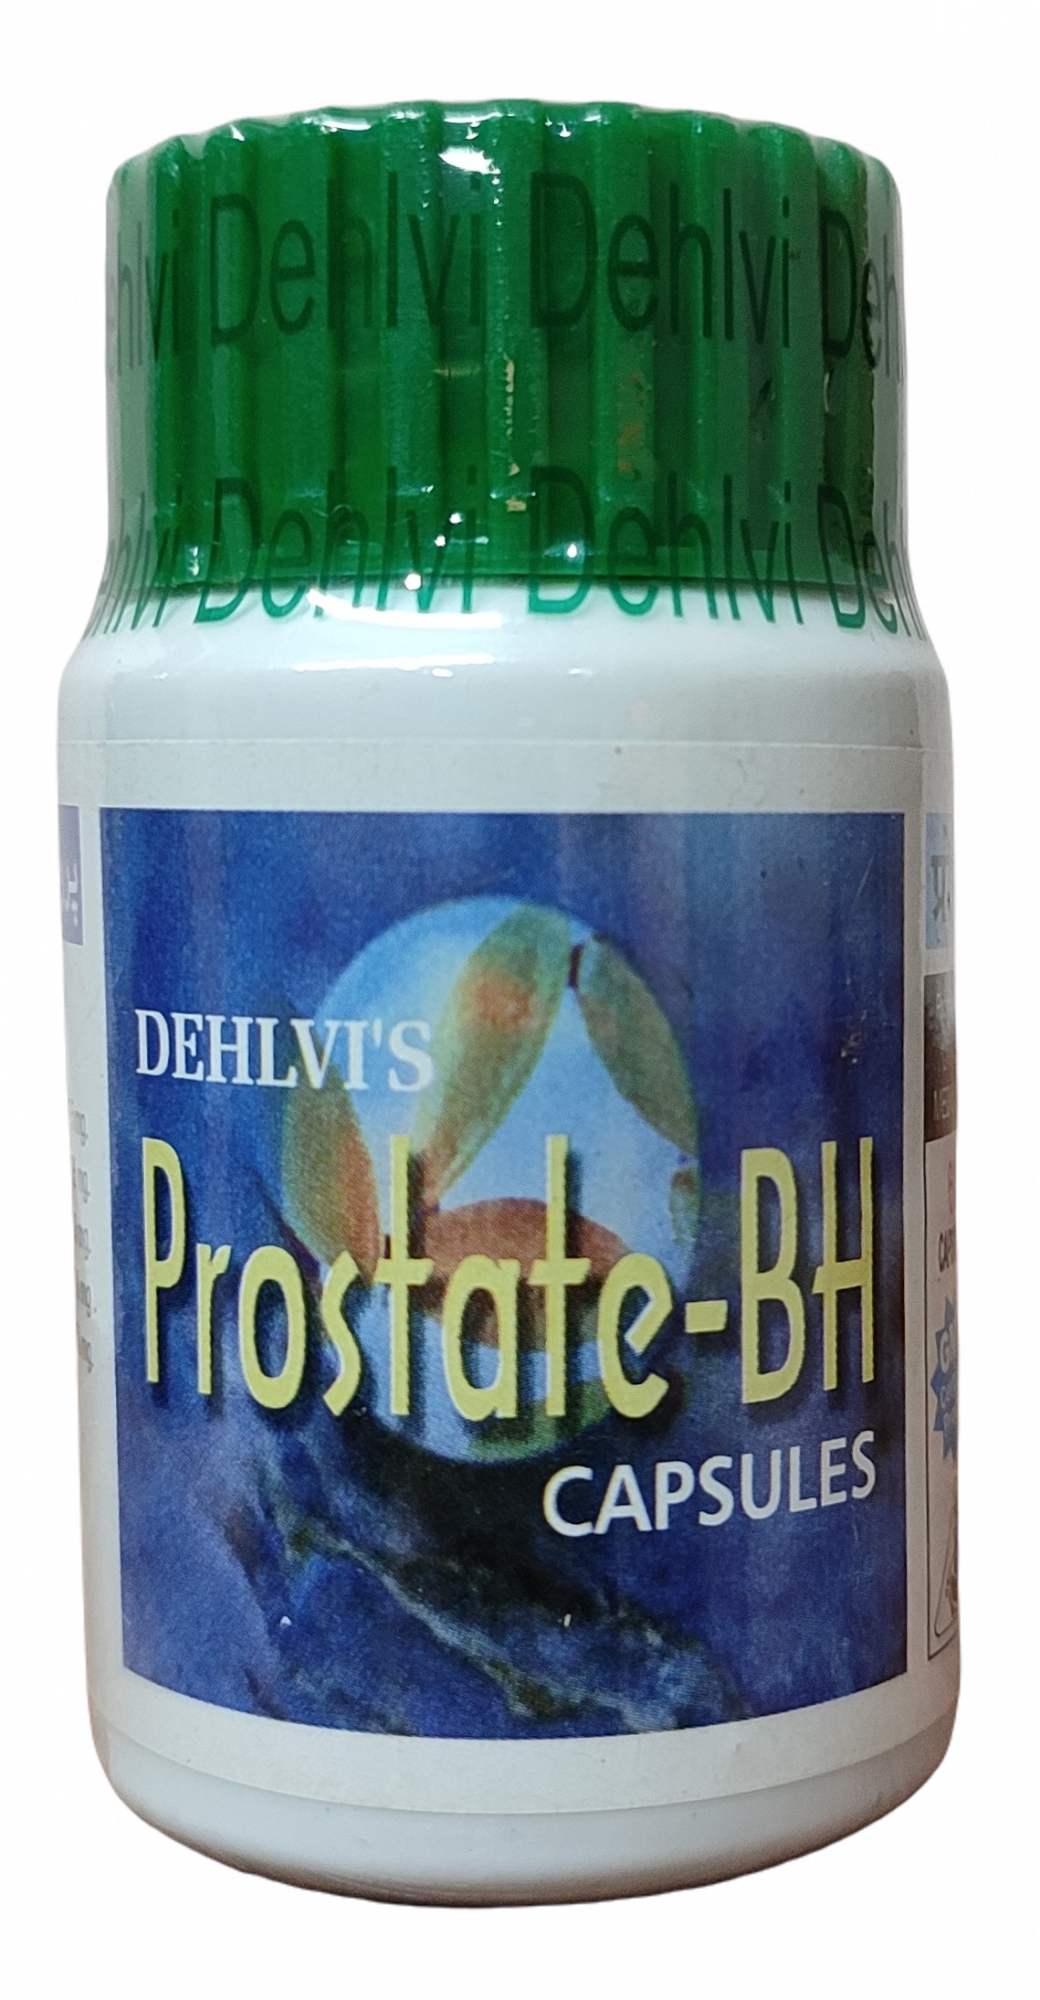 Prostate-Bh Capsules Dehlvi (60caps)